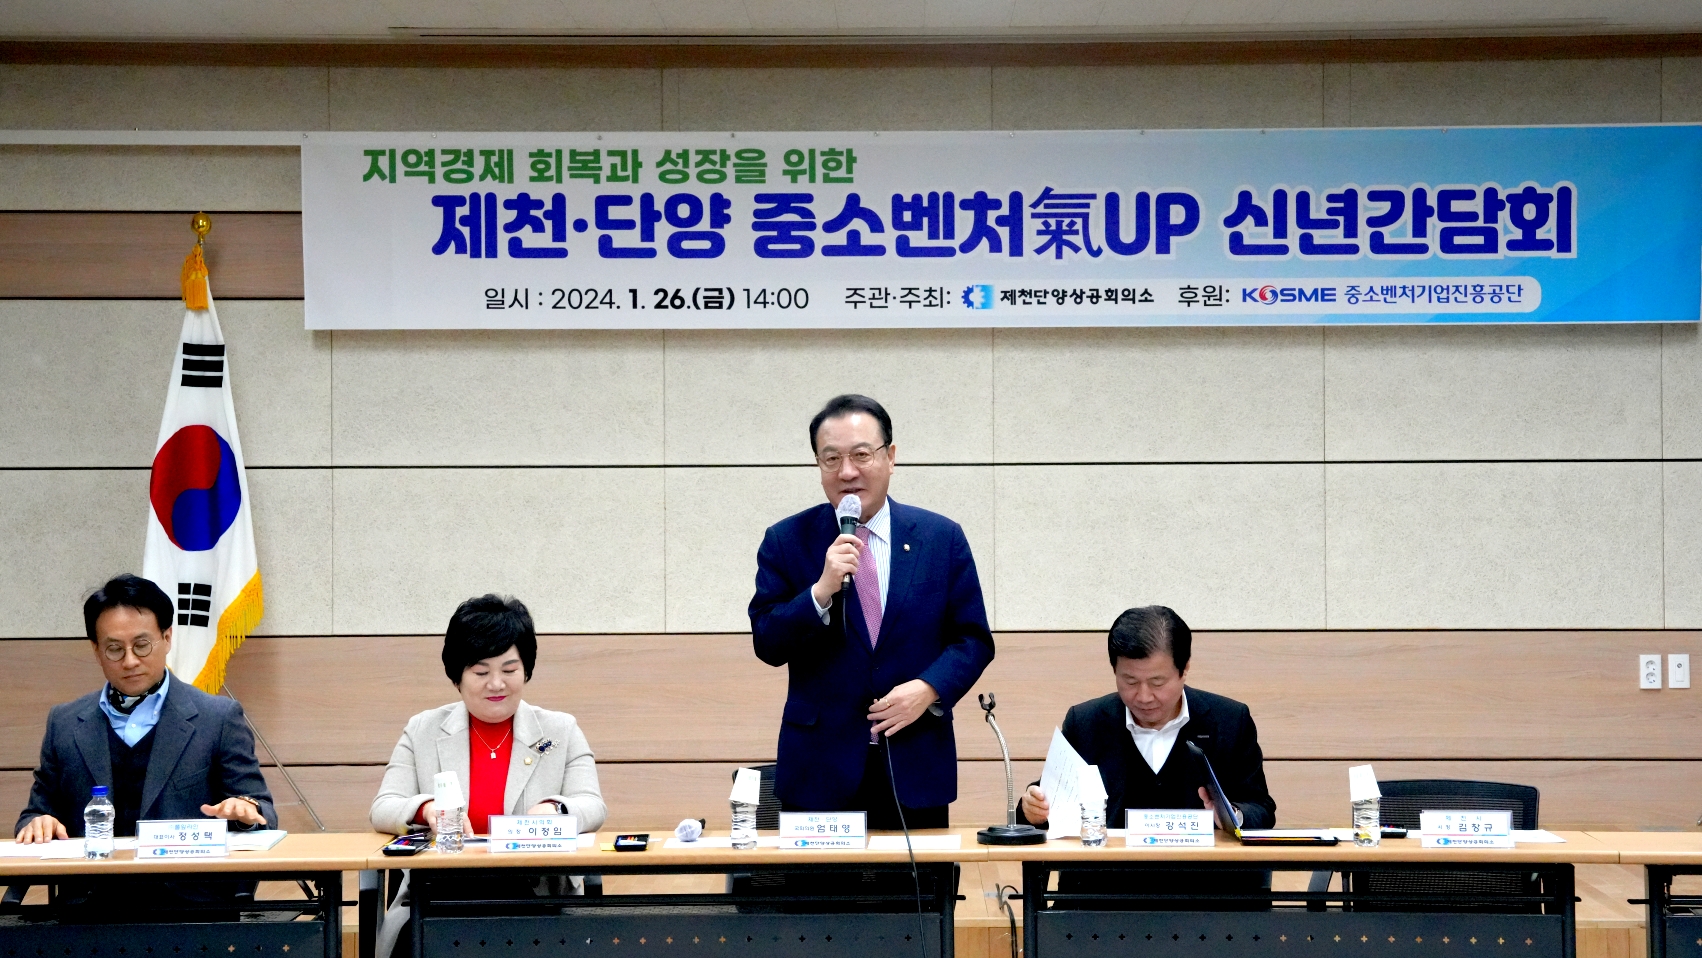 제천·단양지역경제 회복과 성장을 위한 간담회 개최